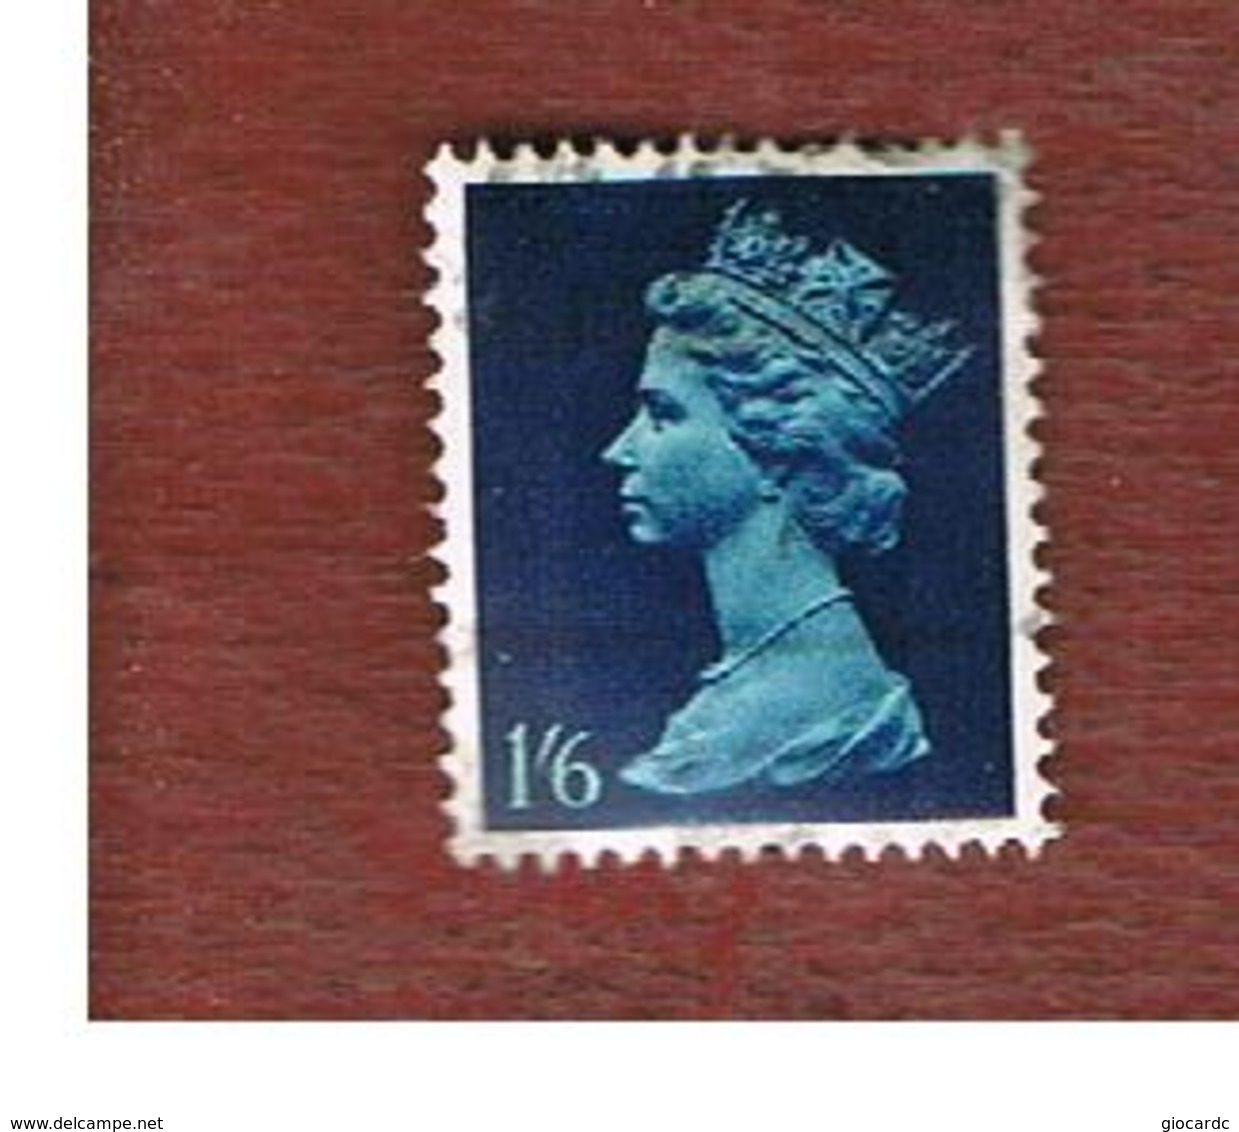 GRAN BRETAGNA (UNITED KINGDOM) -  SG 743  -  1967  QUEEN ELIZABETH II  1/6    - USED° - Used Stamps